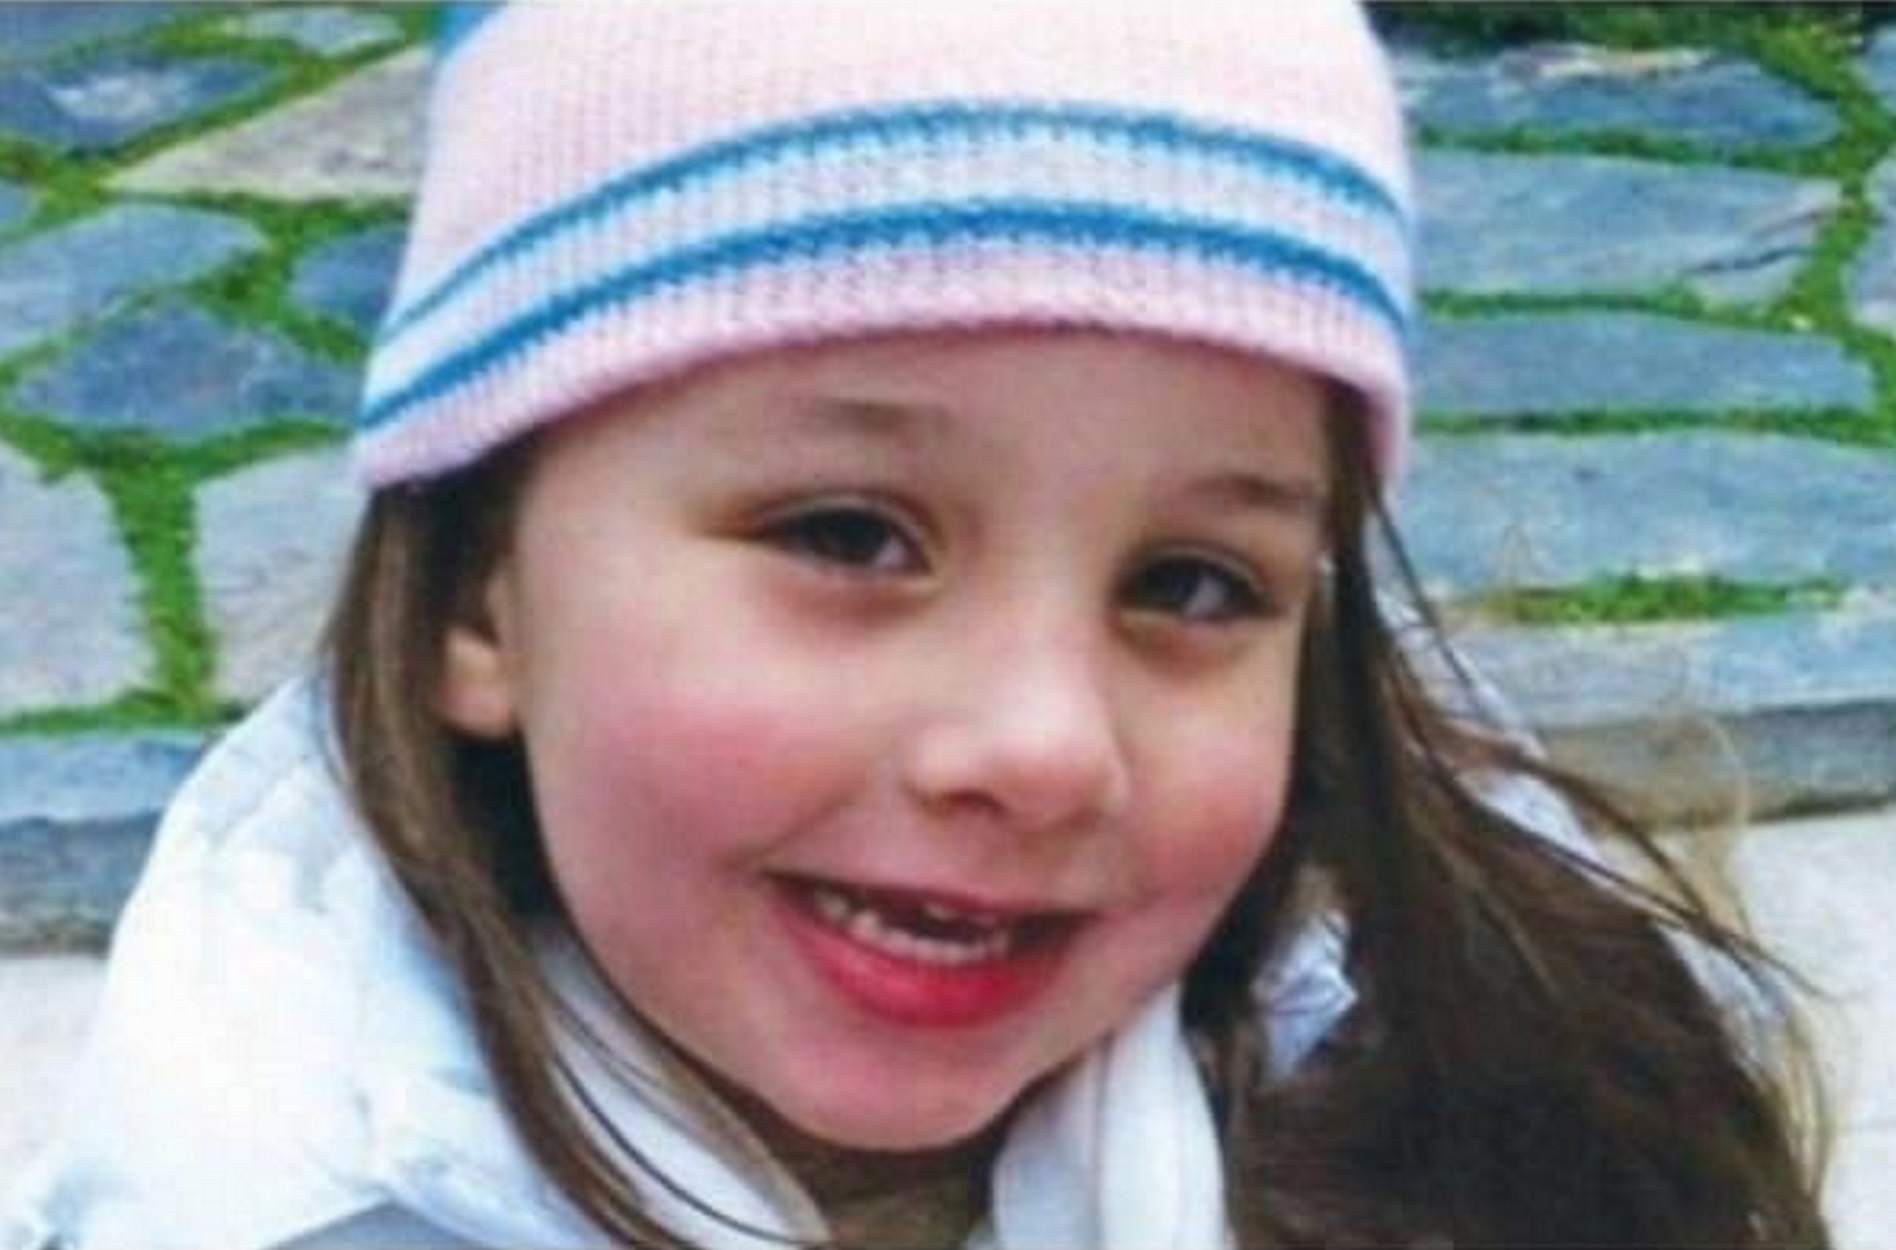 Εισαγγελέας: Τα 20 λεπτά αδράνειας της αναισθησιολόγου στοίχισαν τη ζωή της μικρής Μελίνας